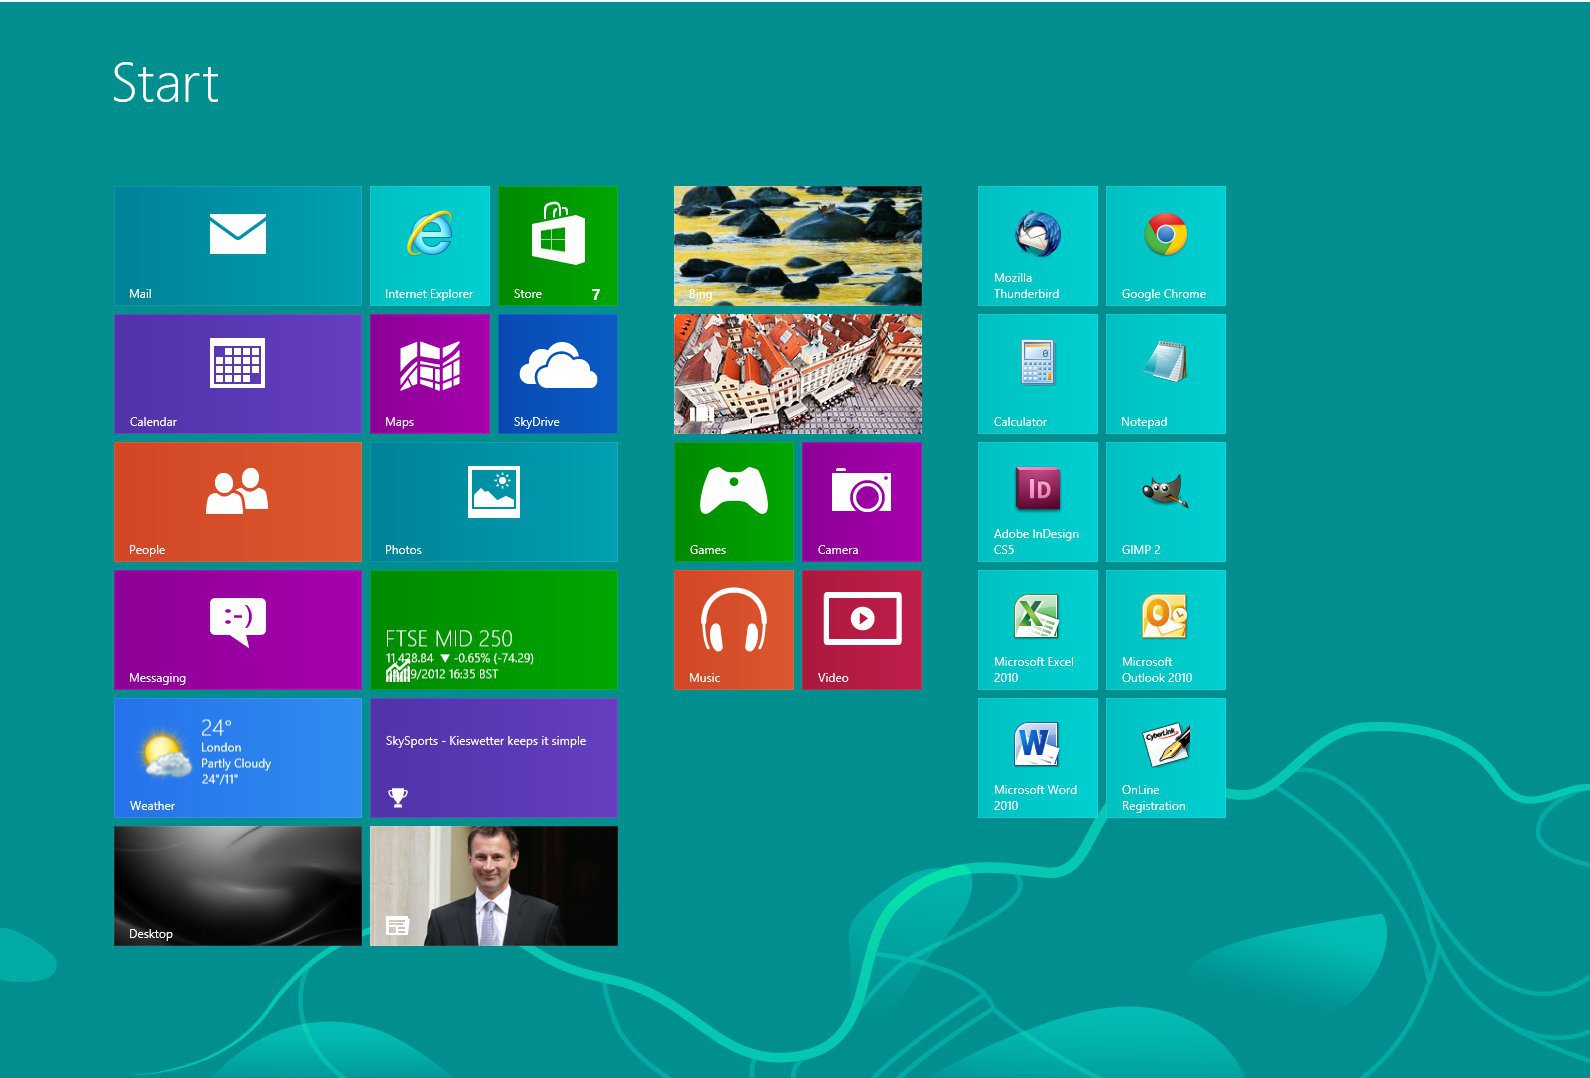 Cambiare lo sfondo della Start Screen di Windows 8 automaticamente